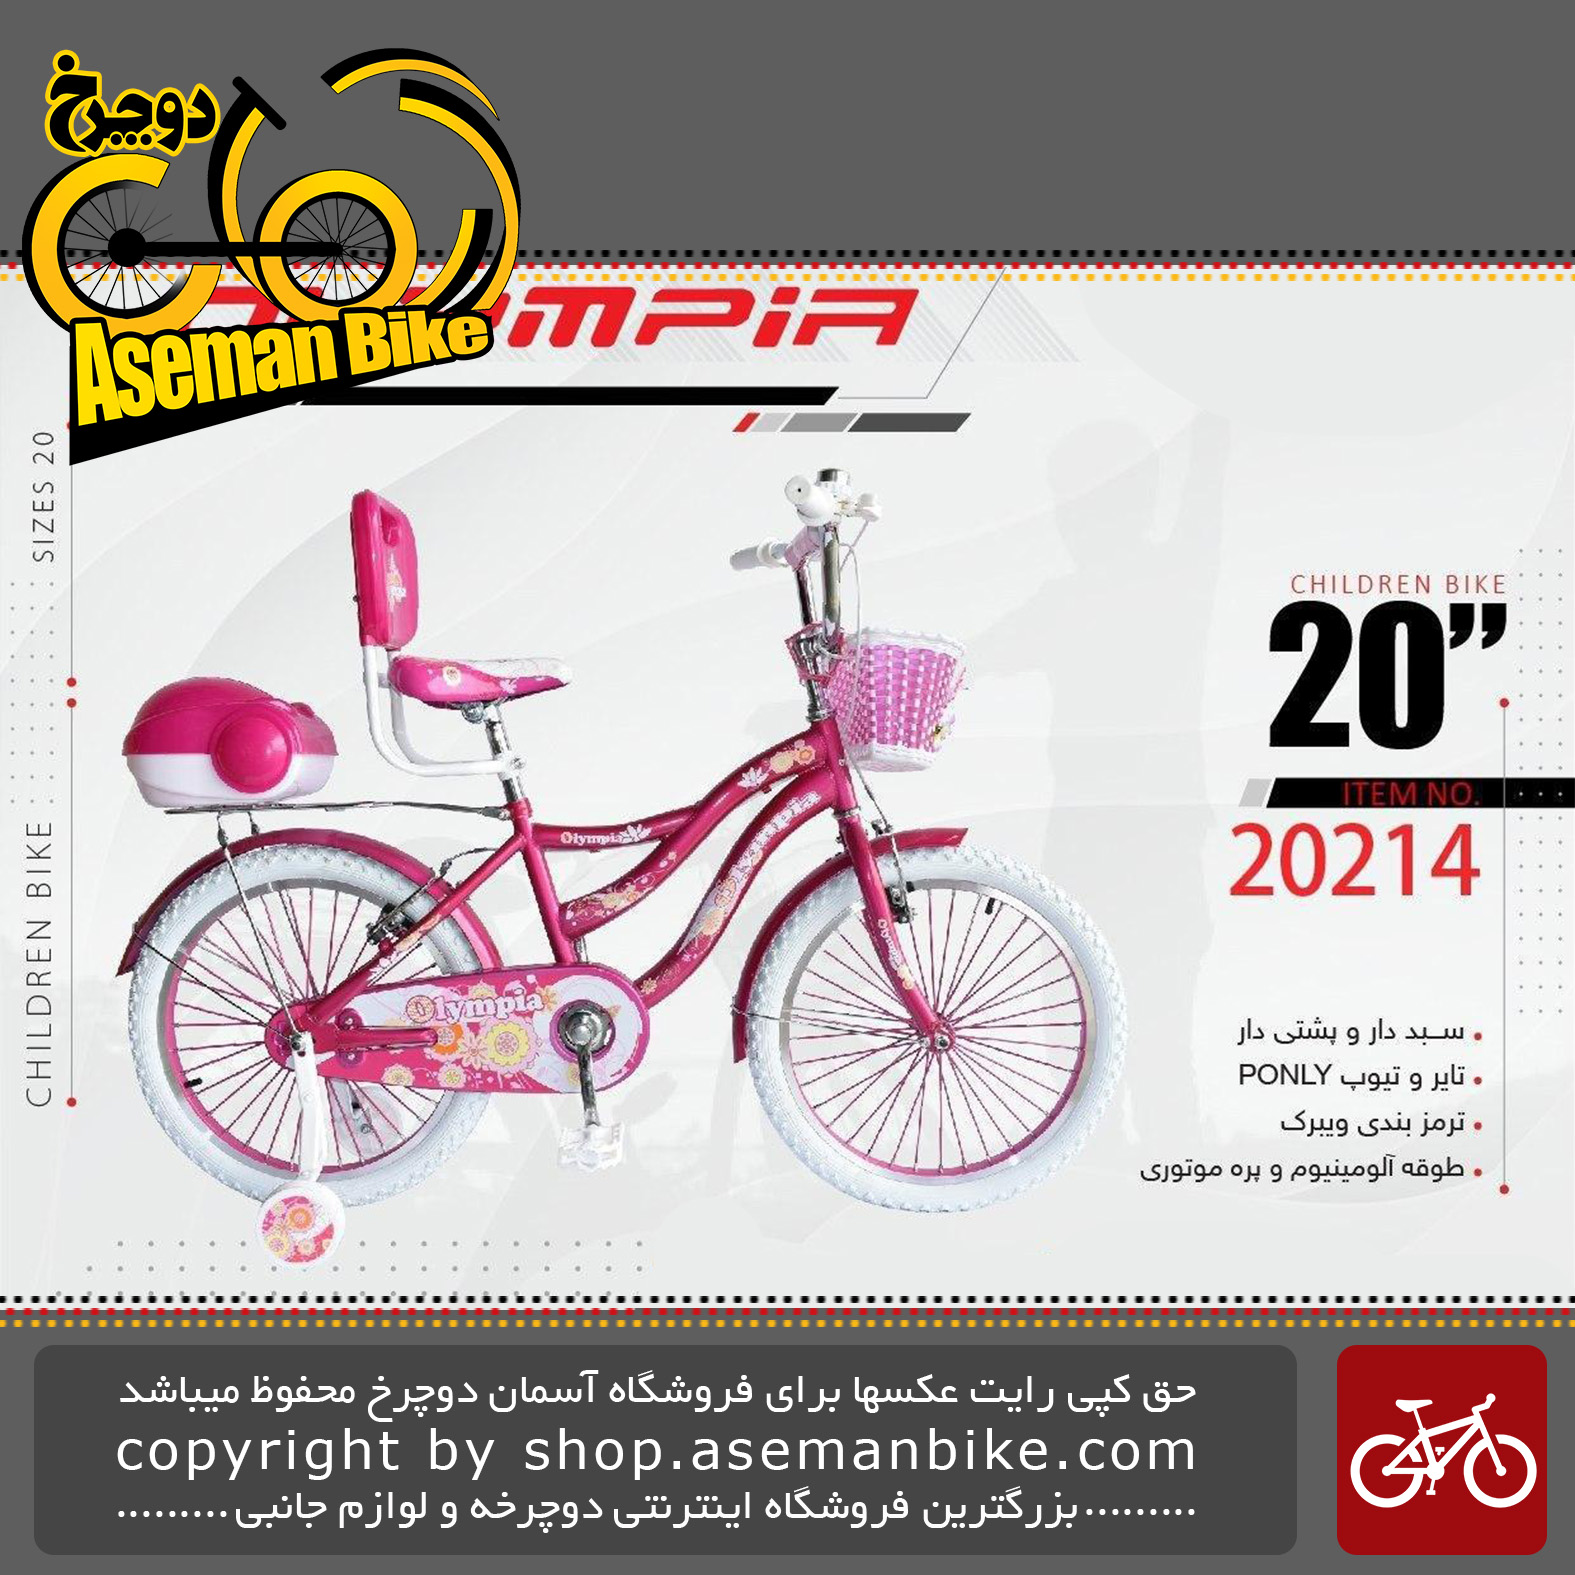 دوچرخه دخترانه بچگانه المپیا سایز ۲۰ پشتی دار صندوق دار سبد دار مدل 20214 OLYMPIA Bicycle Children Bike Size 20 Model 20114